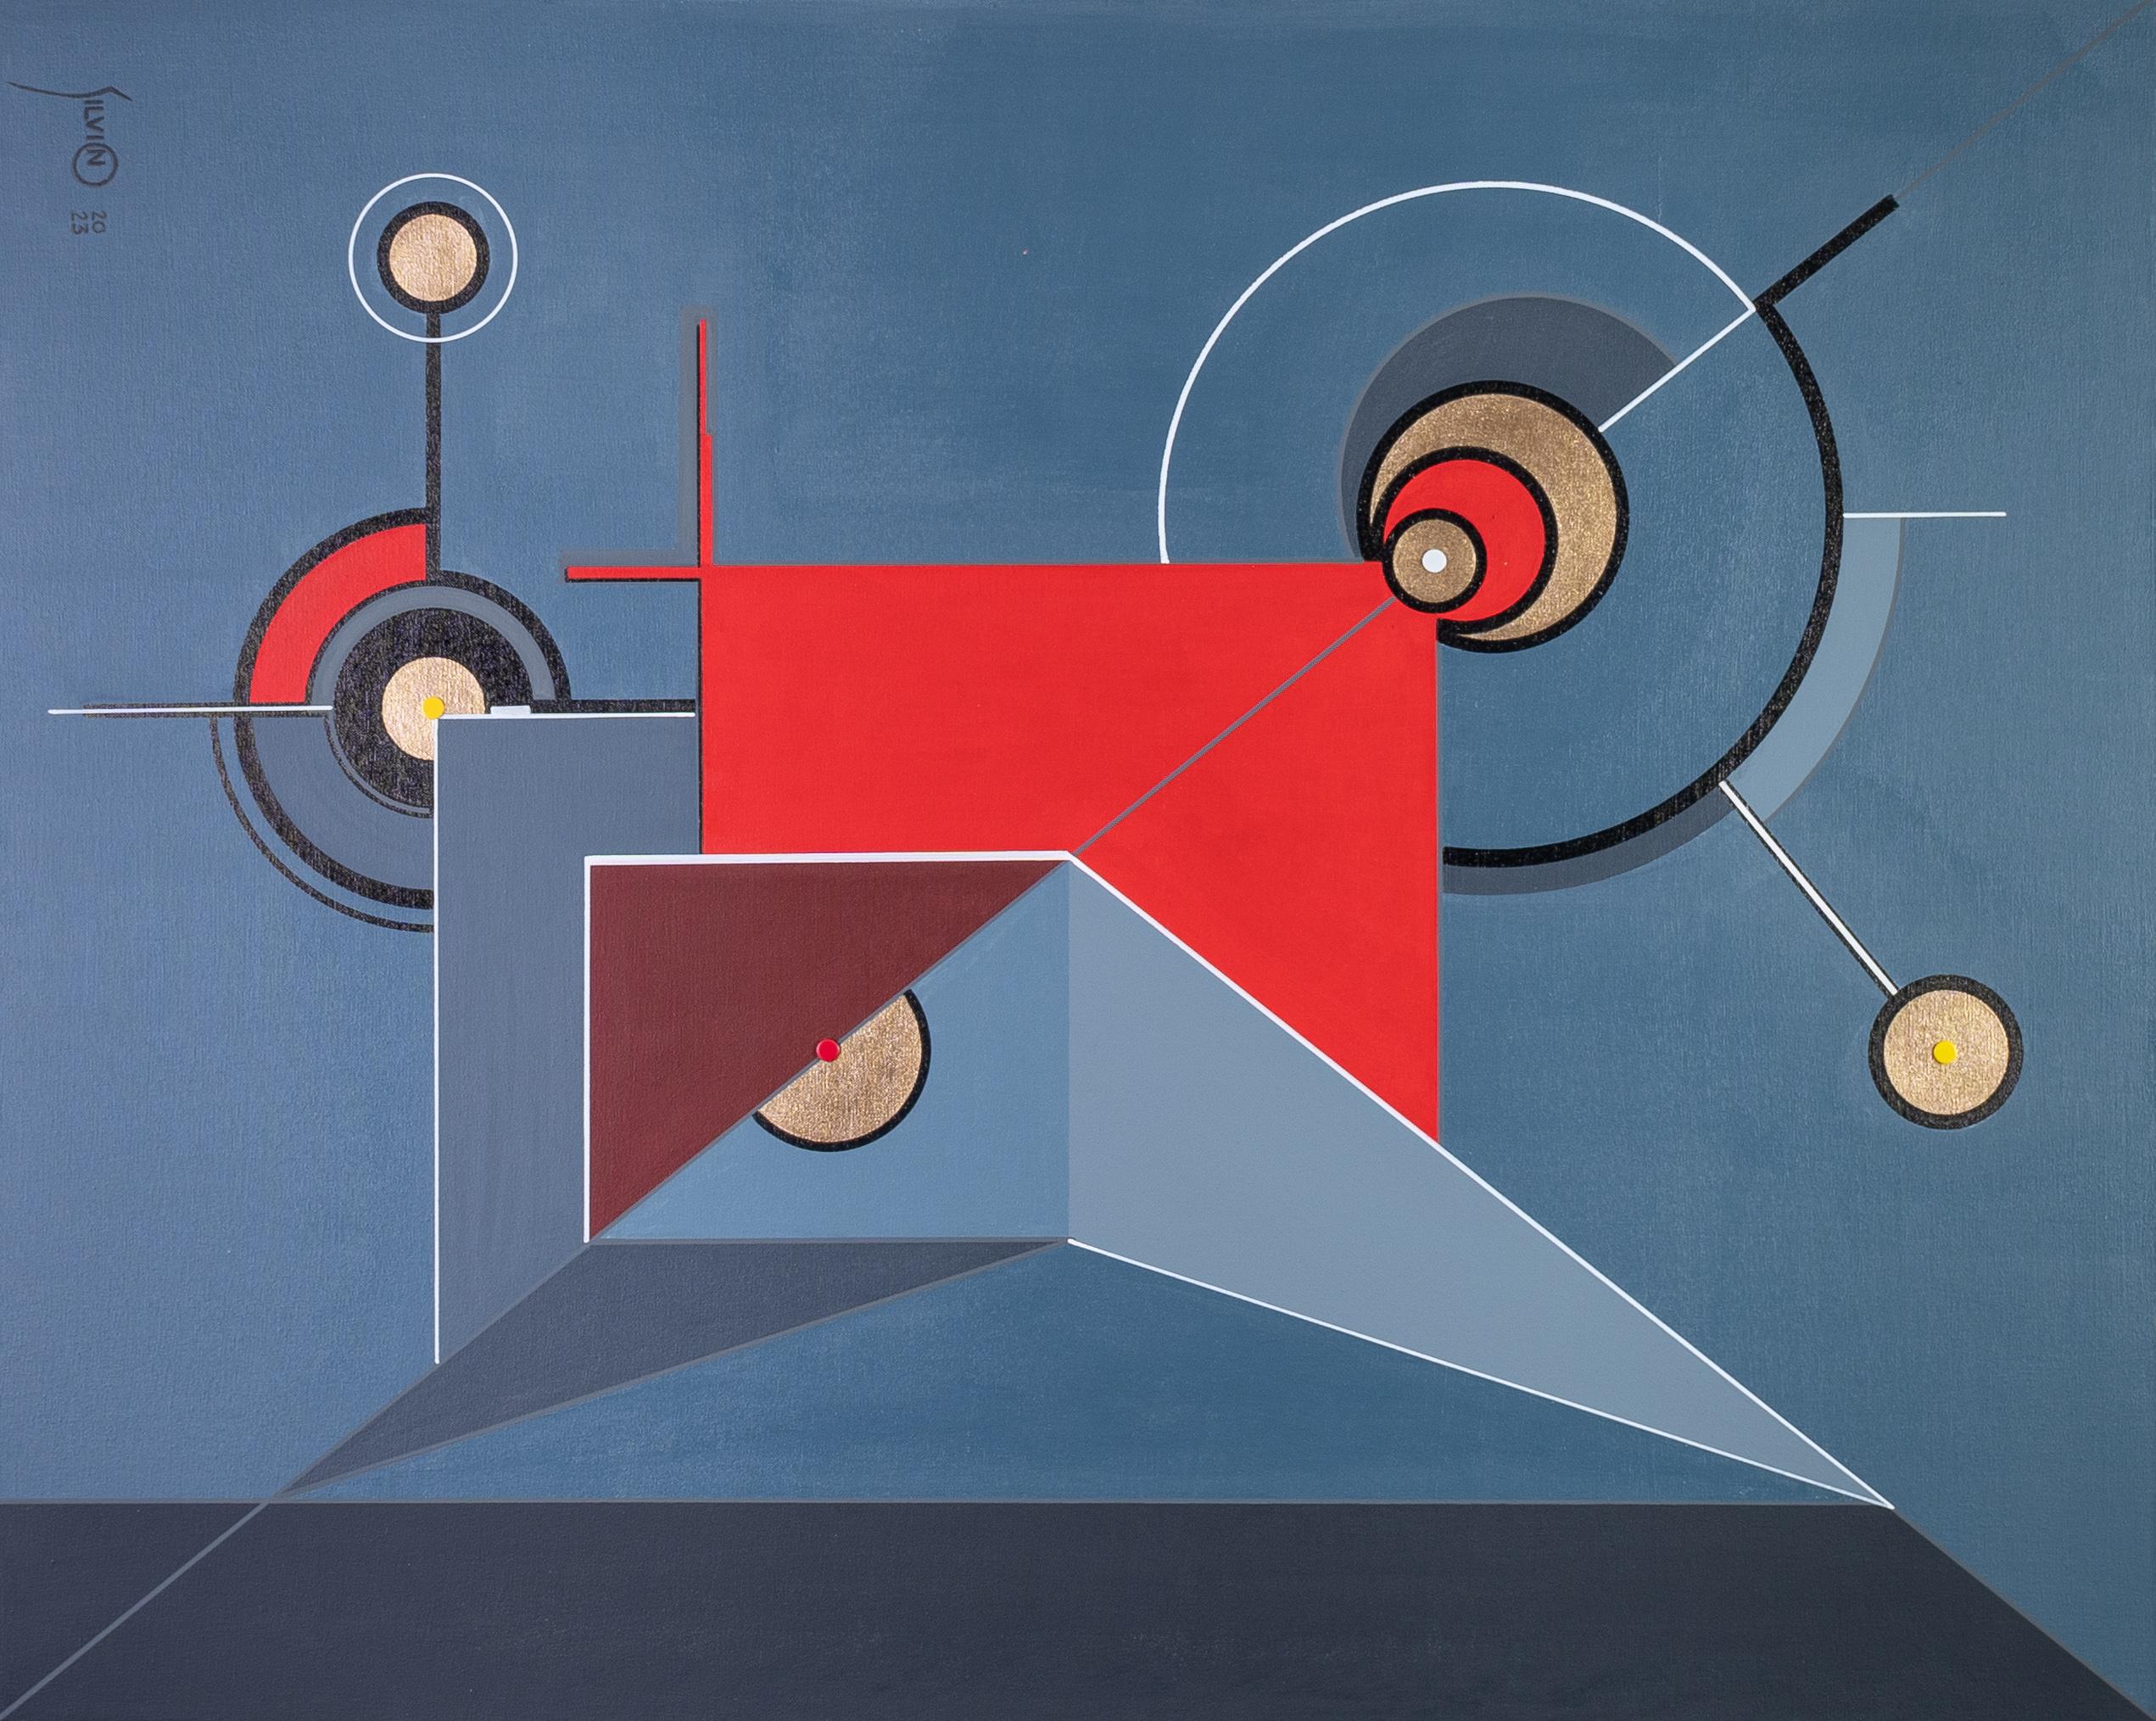 Tableau, acrylique sur toile

Silvino Lopeztovar
Né à Tlahuelilpan, Hidalgo, Mexique en 1970, Silvino Lopeztovar a terminé ses études professionnelles de design à l'Universidad Nuevo Mundo en 1994. Après son baccalauréat, il a obtenu un diplôme en